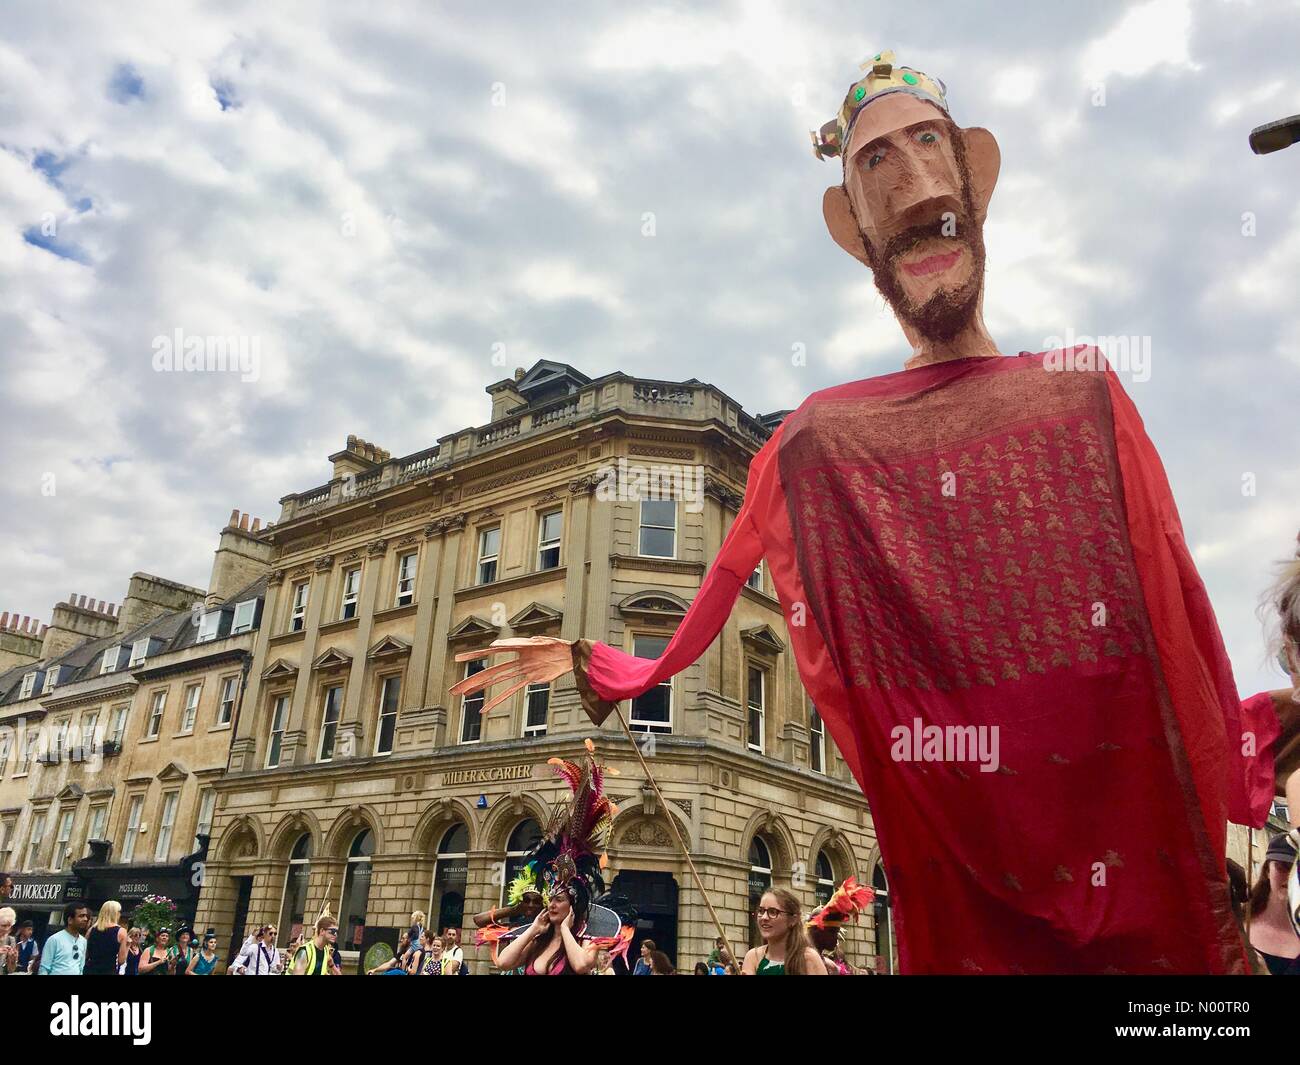 Badewanne Karneval 21. Juli 2018 Bath, England Großbritannien der jährlichen Badewanne Karnevalsumzug. Credit: Lisa Werner/StockimoNews/Alamy leben Nachrichten Stockfoto